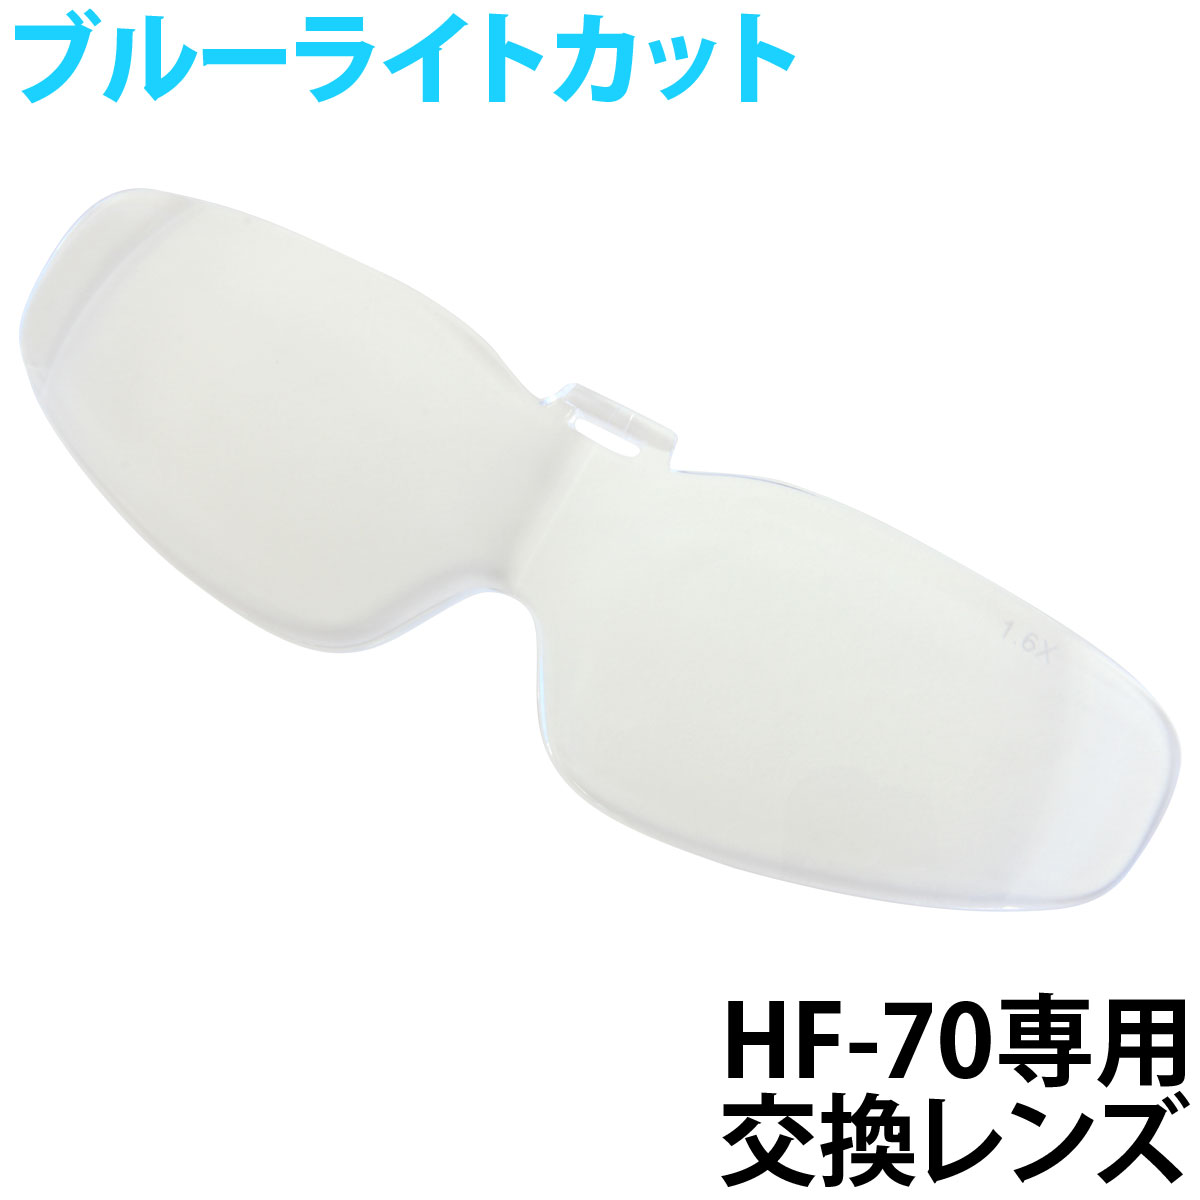 双眼メガネルーペ 交換レンズ HF-70用 HF-D2 HF-E2 手芸用ルーペ 裁縫はね上げ式 ビーズ ネイル エクステ クリアルーペ メガネ型ルーペ 池田レンズ